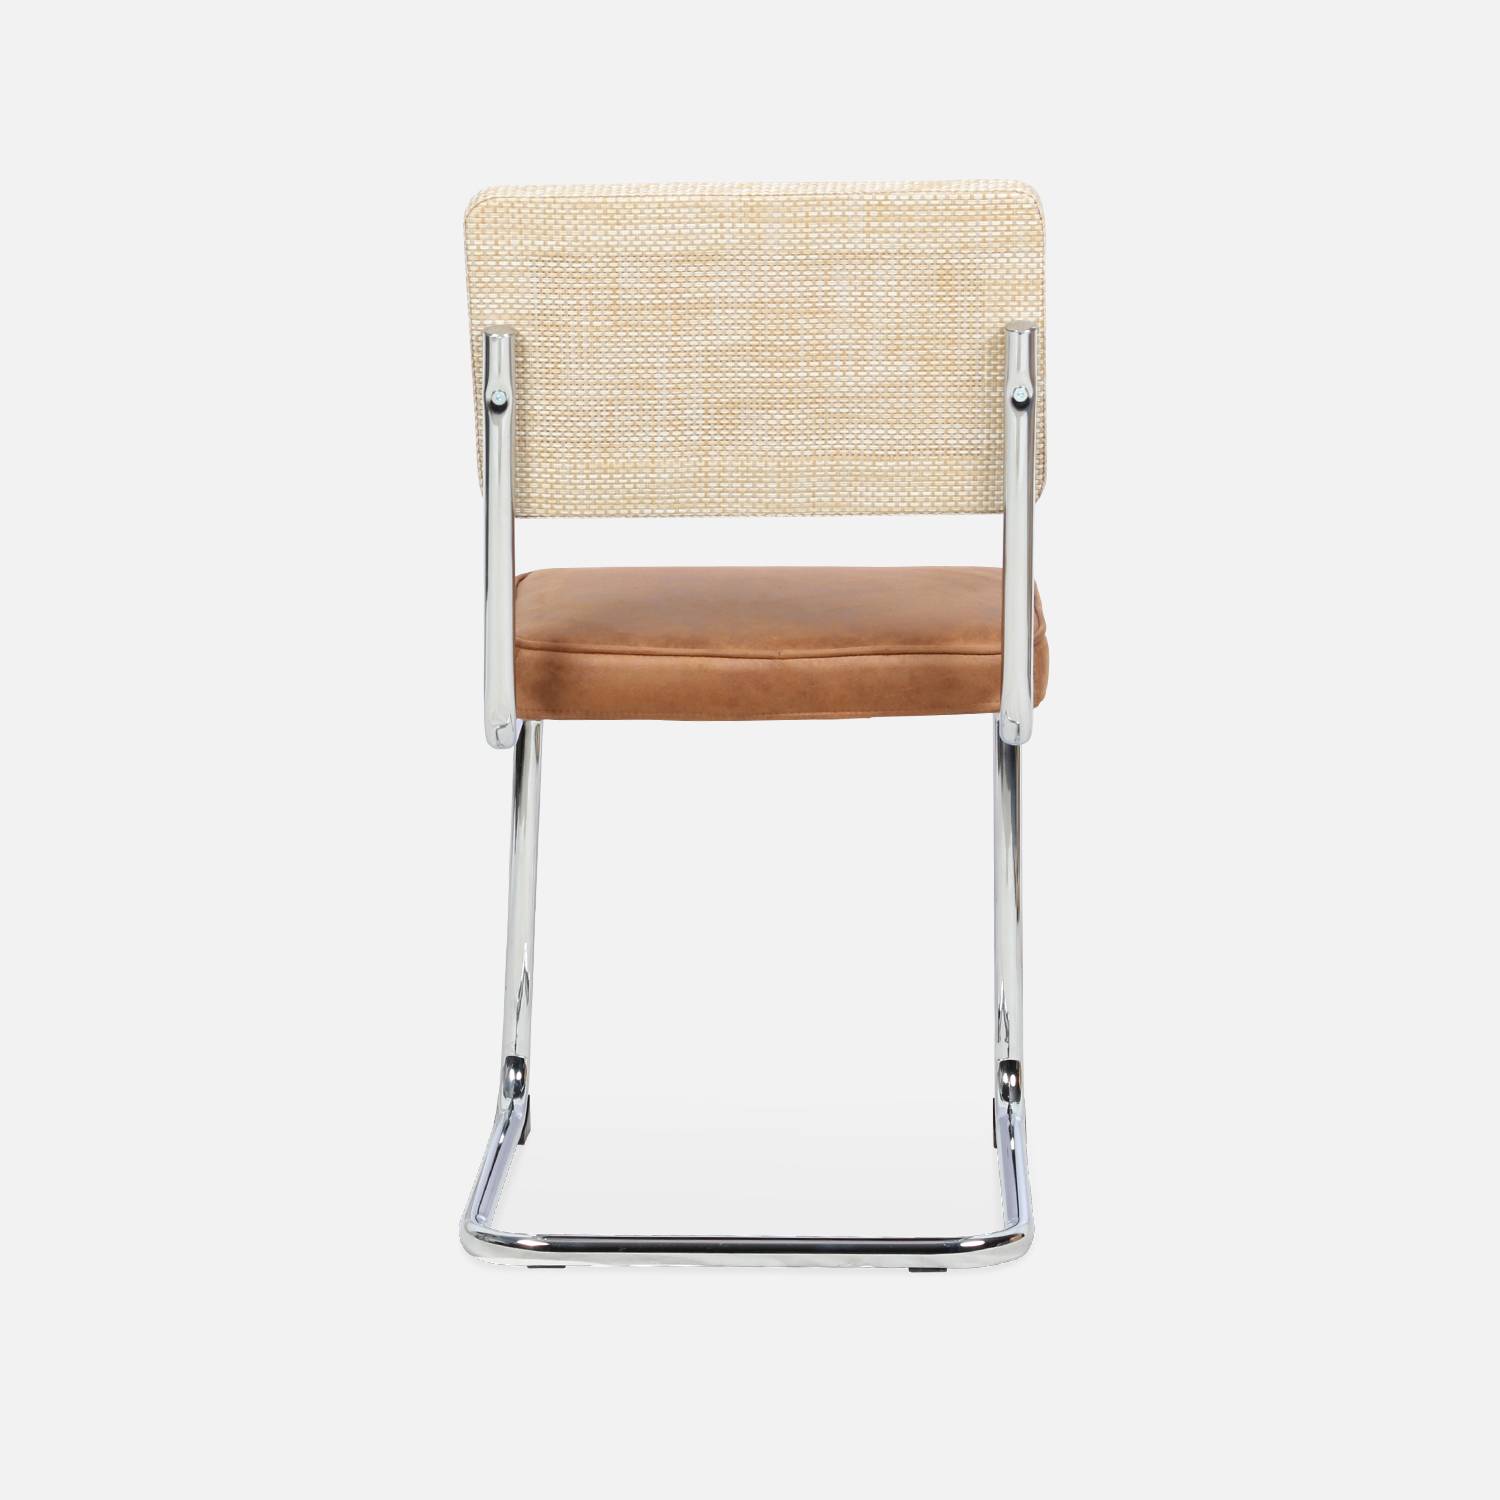 2 sillas cantilever - Maja - tela marrón claro y resina efecto ratán, 46 x 54,5 x 84,5cm   Photo8